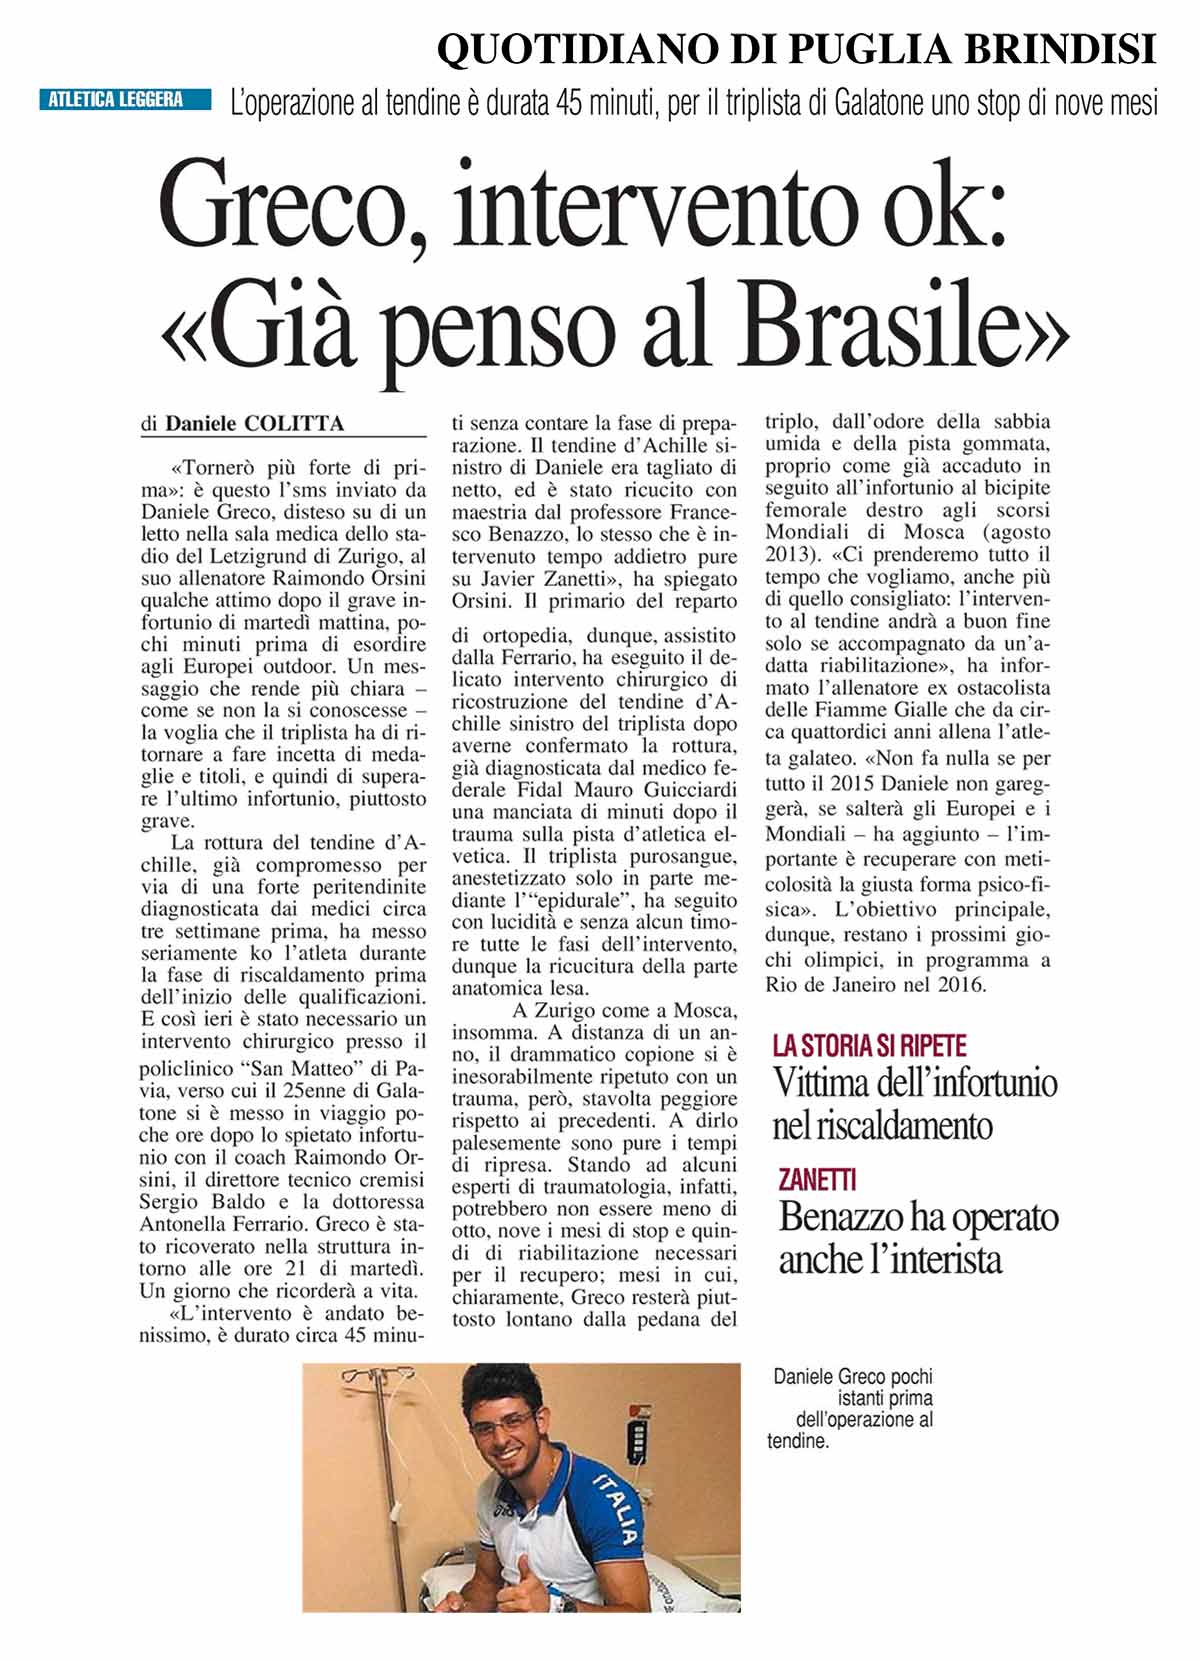 Quotidiano Puglia Brindisi 14 08 14